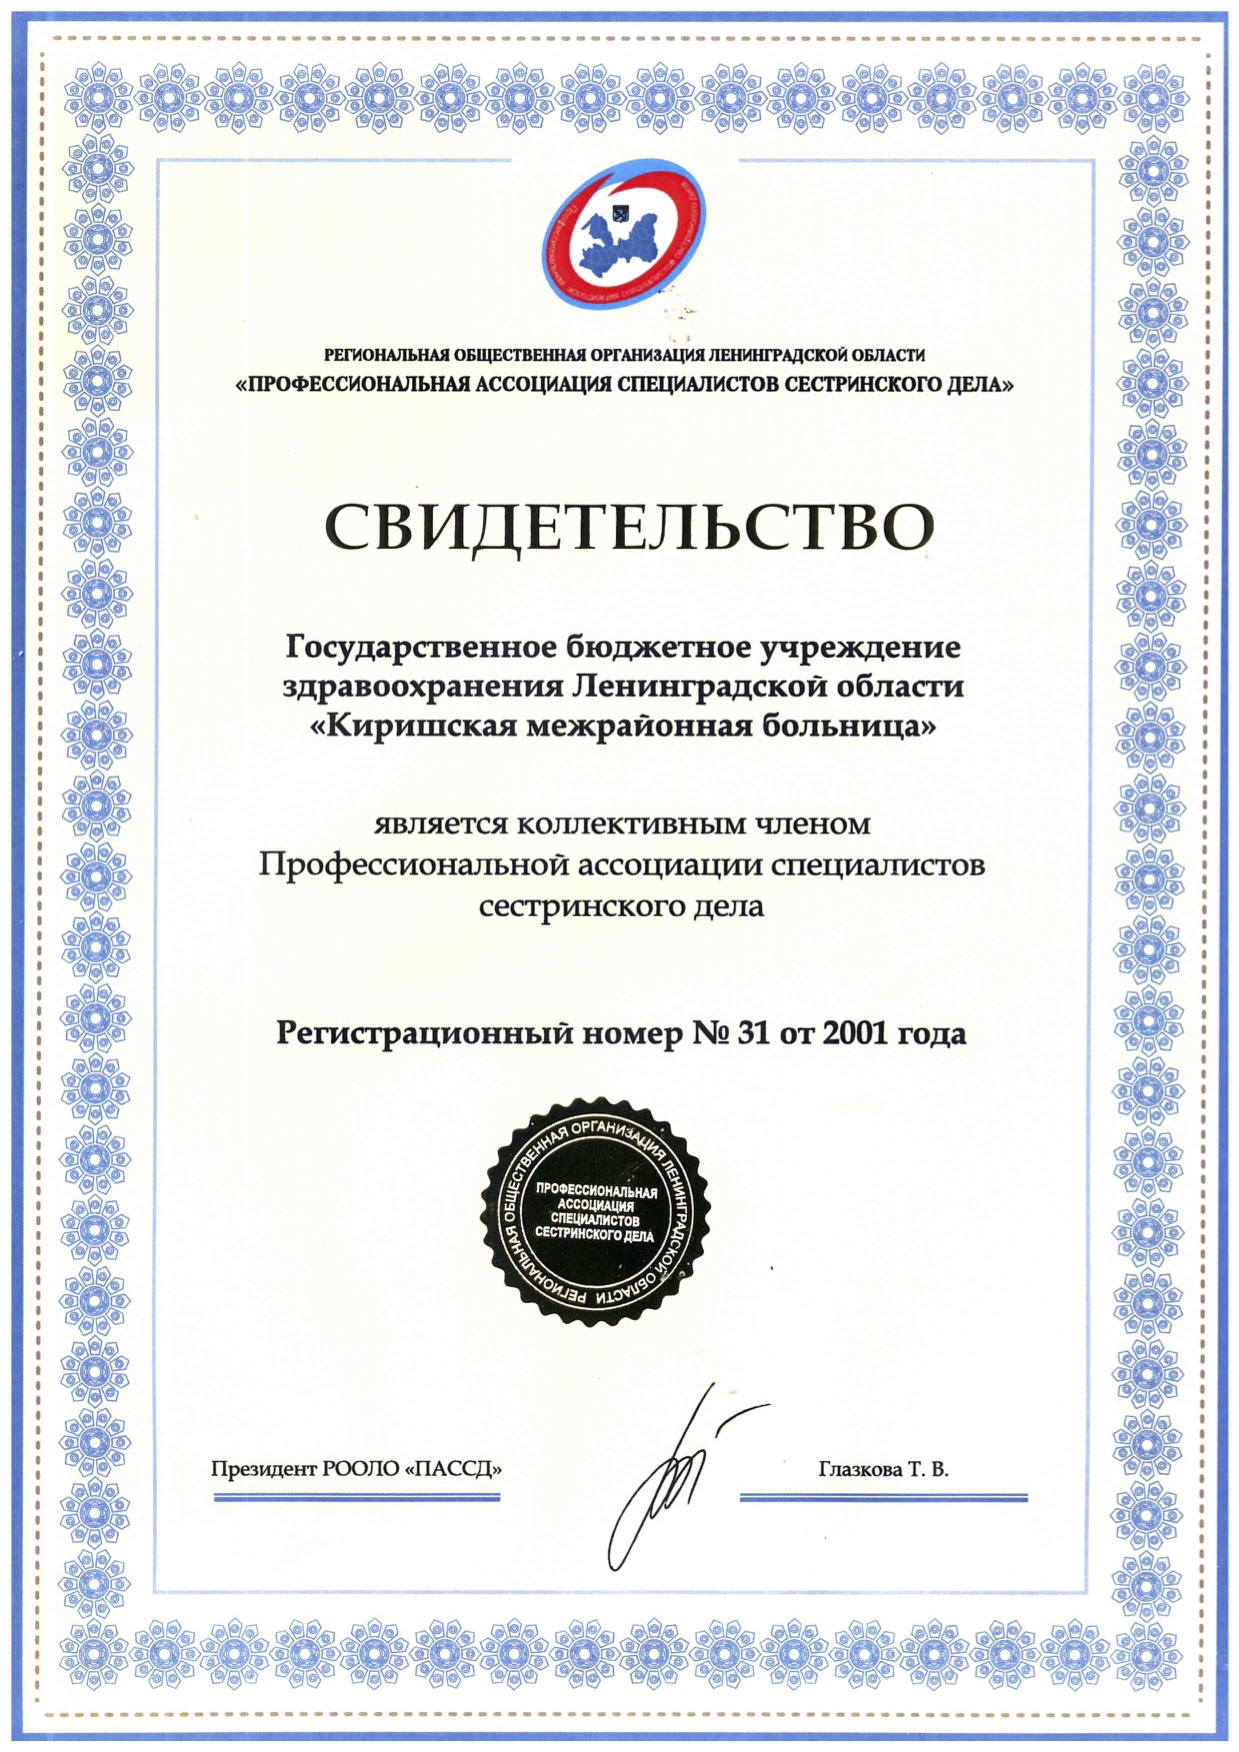 ГБУЗ ЛО "Киришская КМБ": сертификат